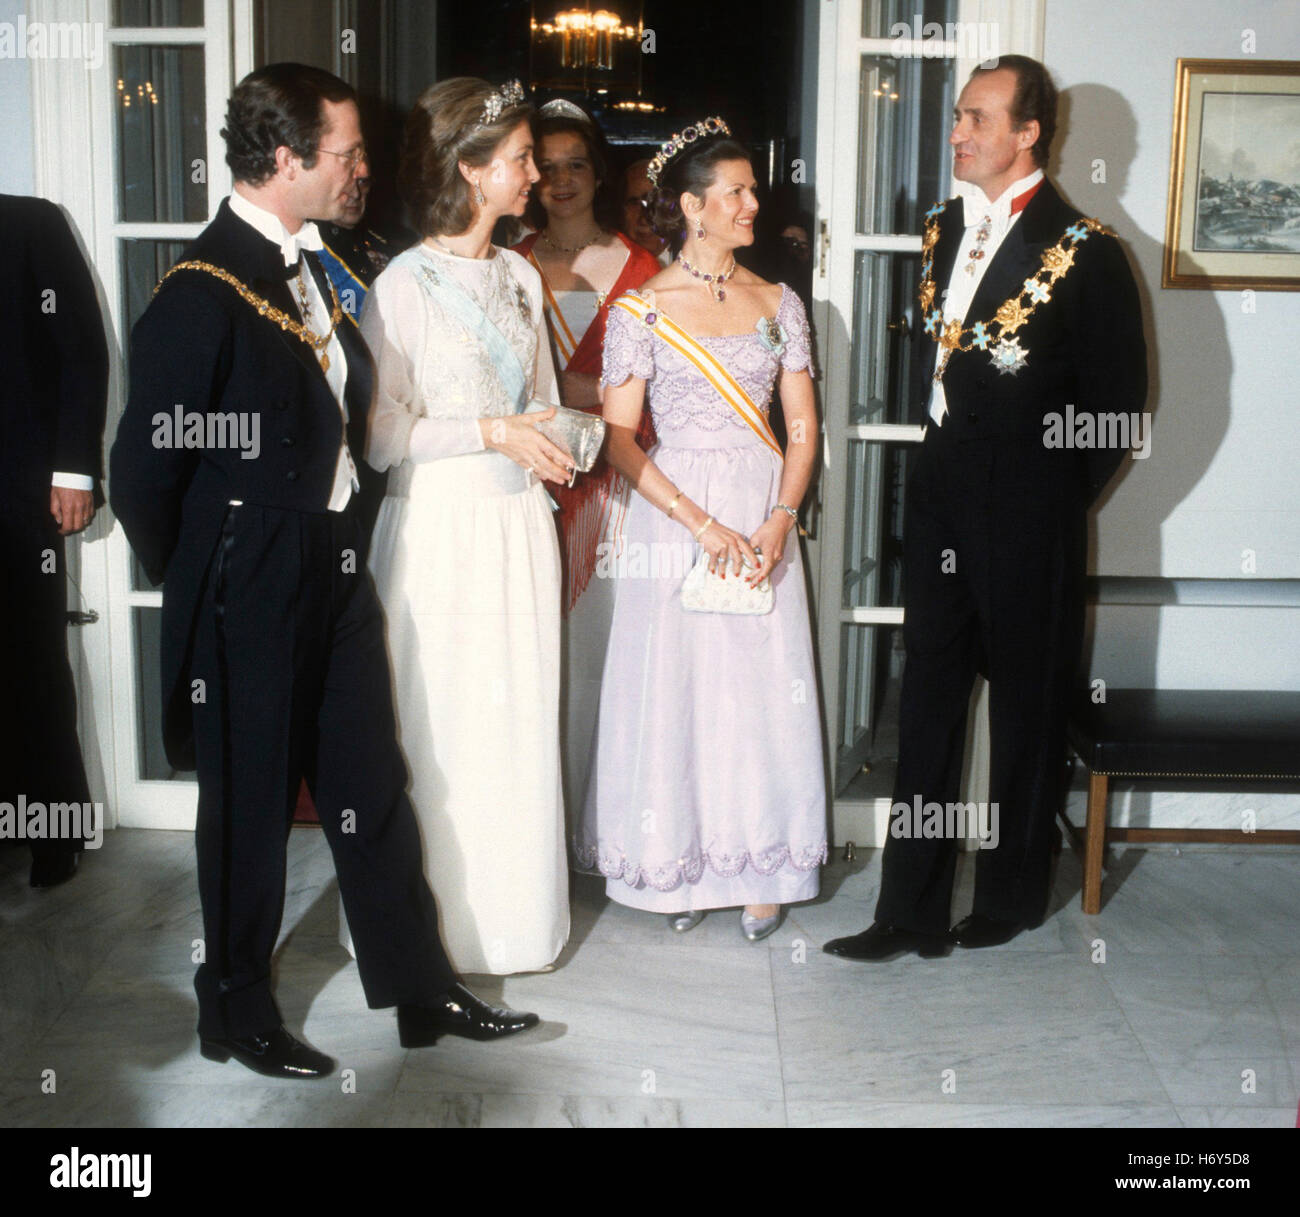 la-pareja-real-sueca-junto-con-el-rey-de-espana-juan-carlos-y-la-reina-sofia-en-visita-oficial-a-espana-1983-h6y5d8.jpg